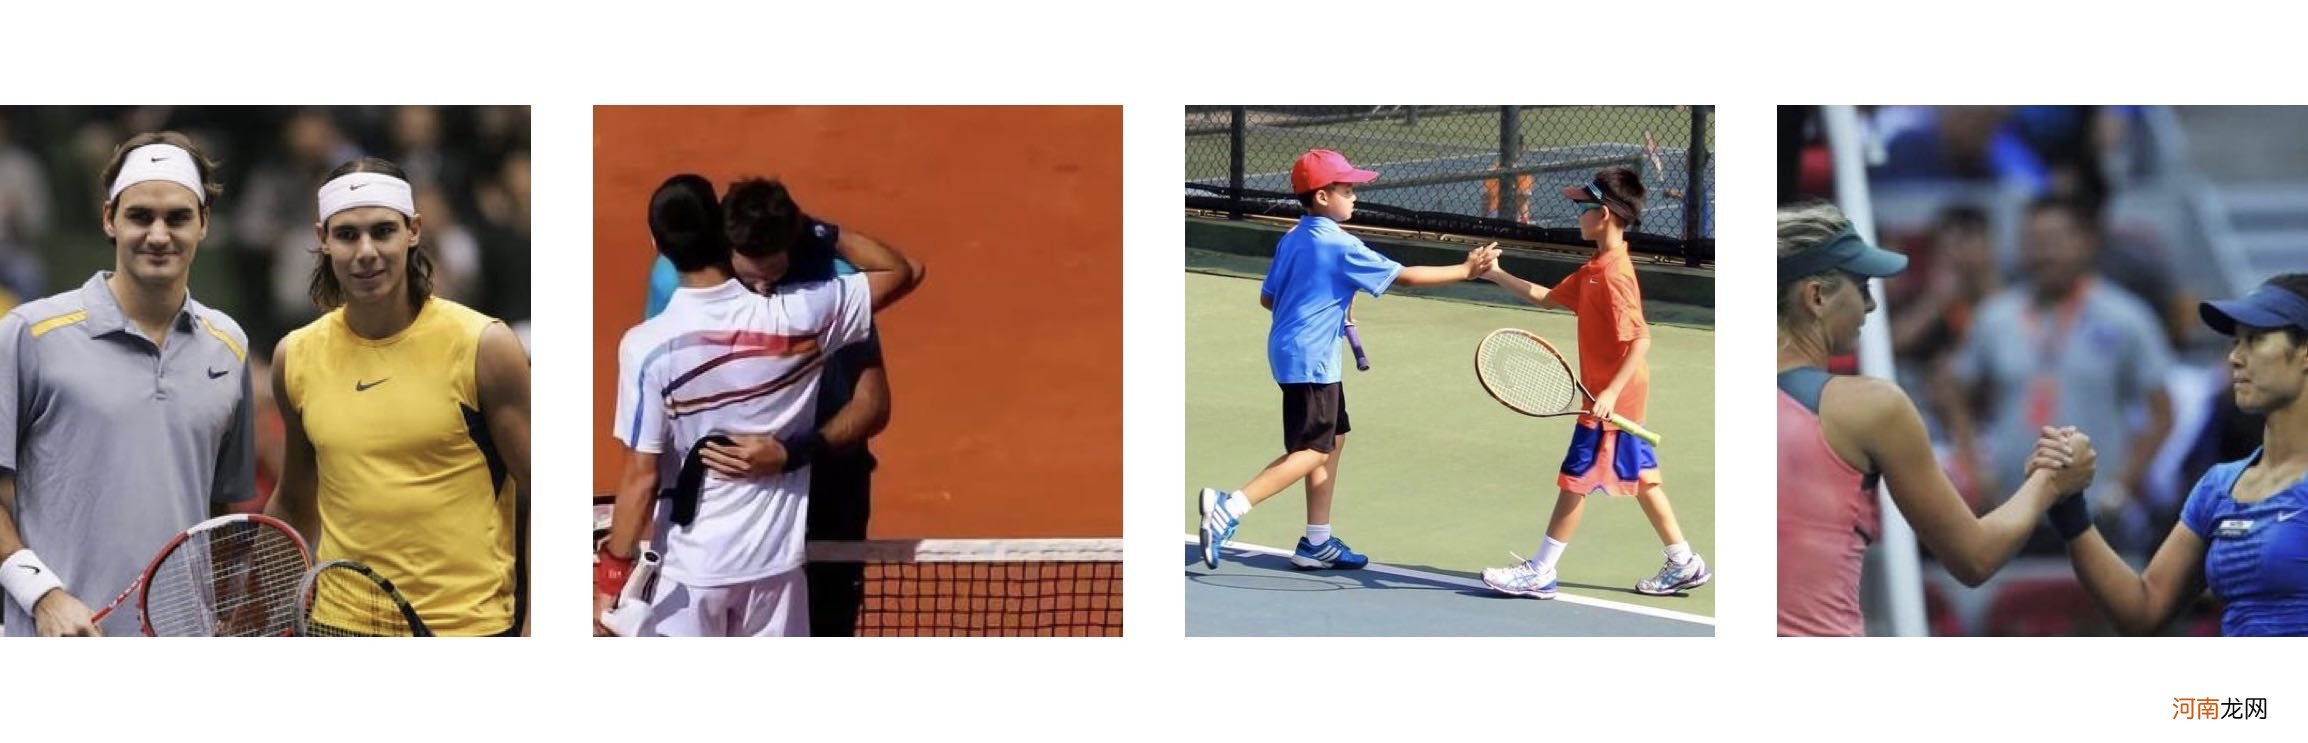 网球运动的起源与发展 网球为什么是贵族运动